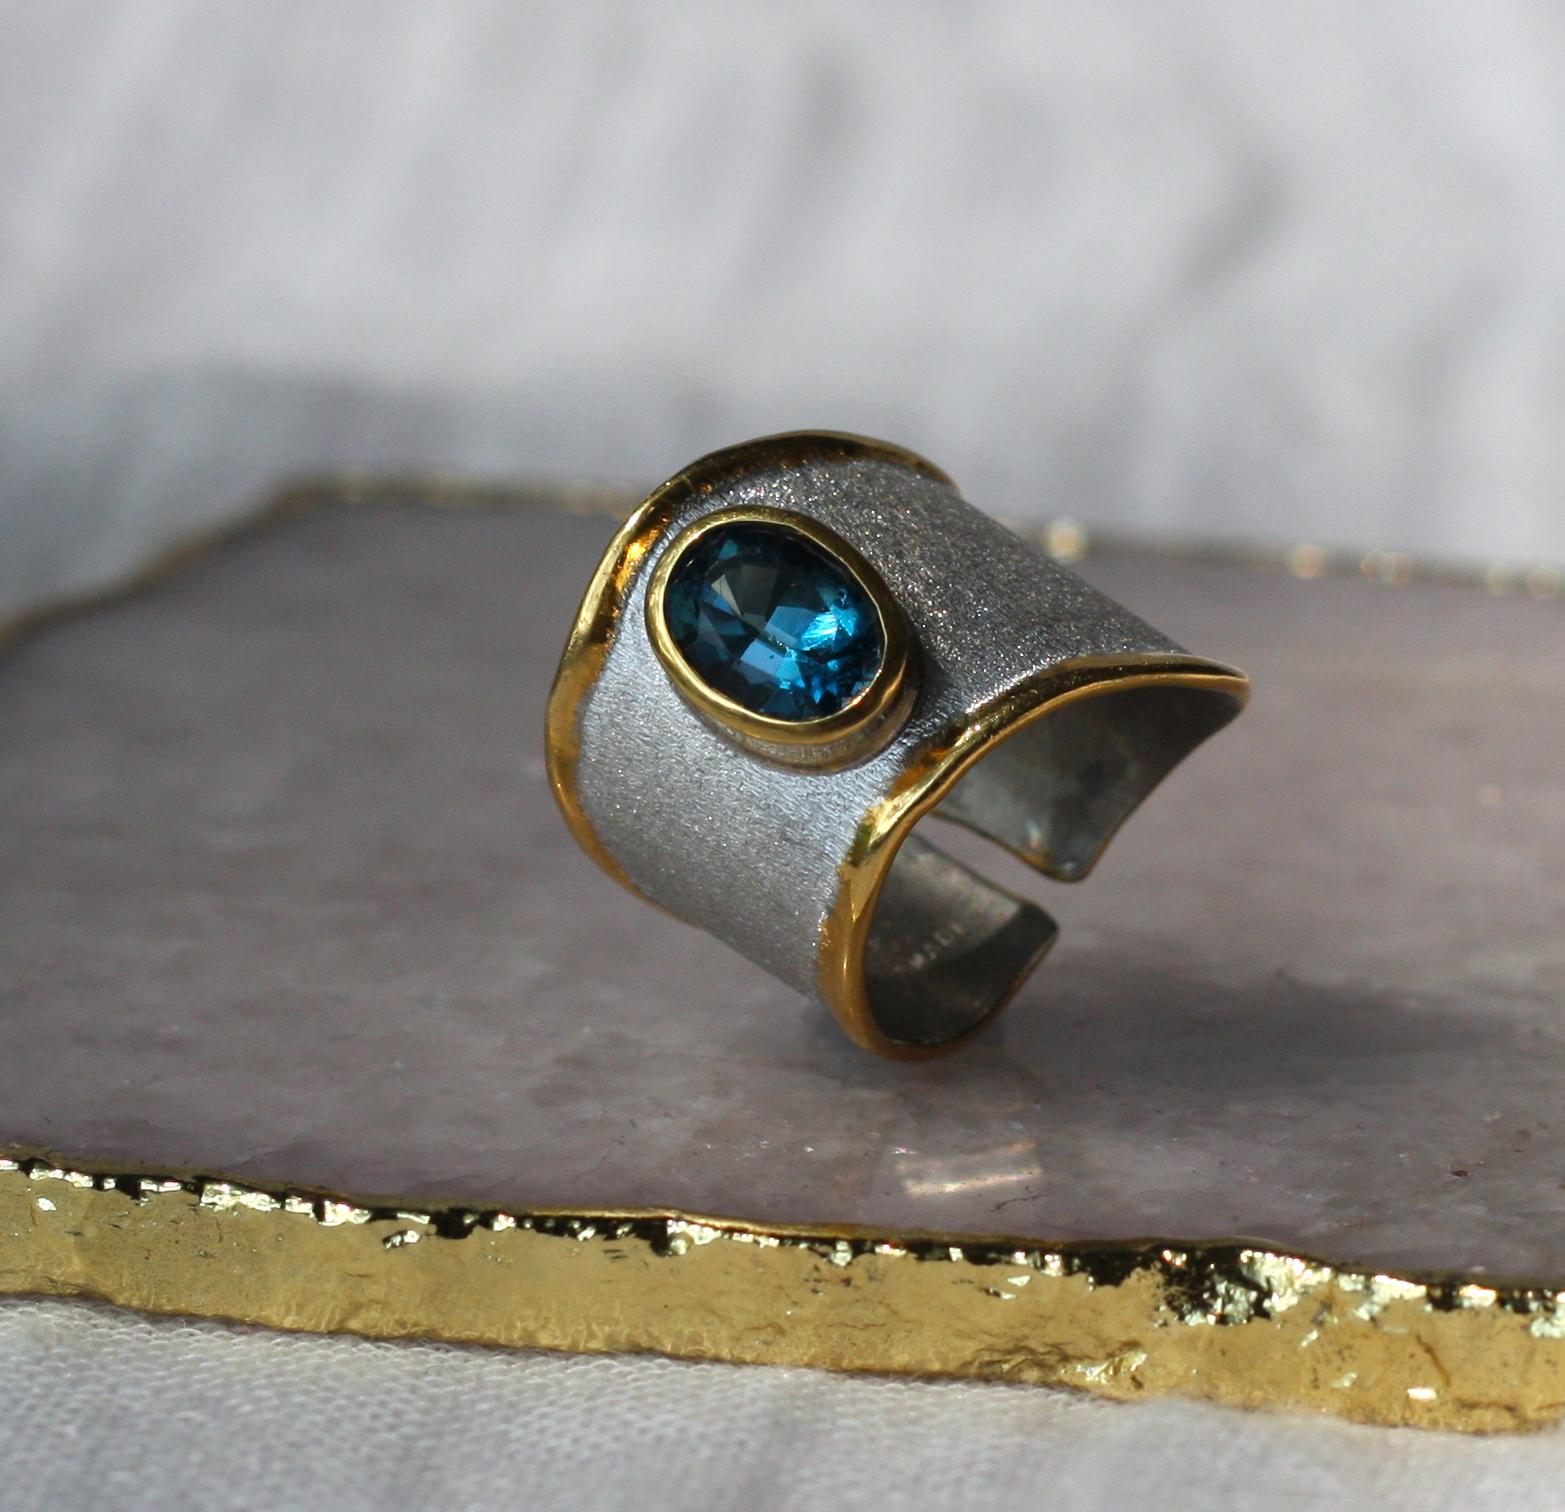 Der handgefertigte Ring der Midas Collection von Yianni Creations besteht aus reinem 950er Silber, das mit Palladium überzogen ist, um den Elementen zu widerstehen. Die Flüssigkeitsränder sind mit einer Auflage aus 24 Karat Gelbgold verziert, die